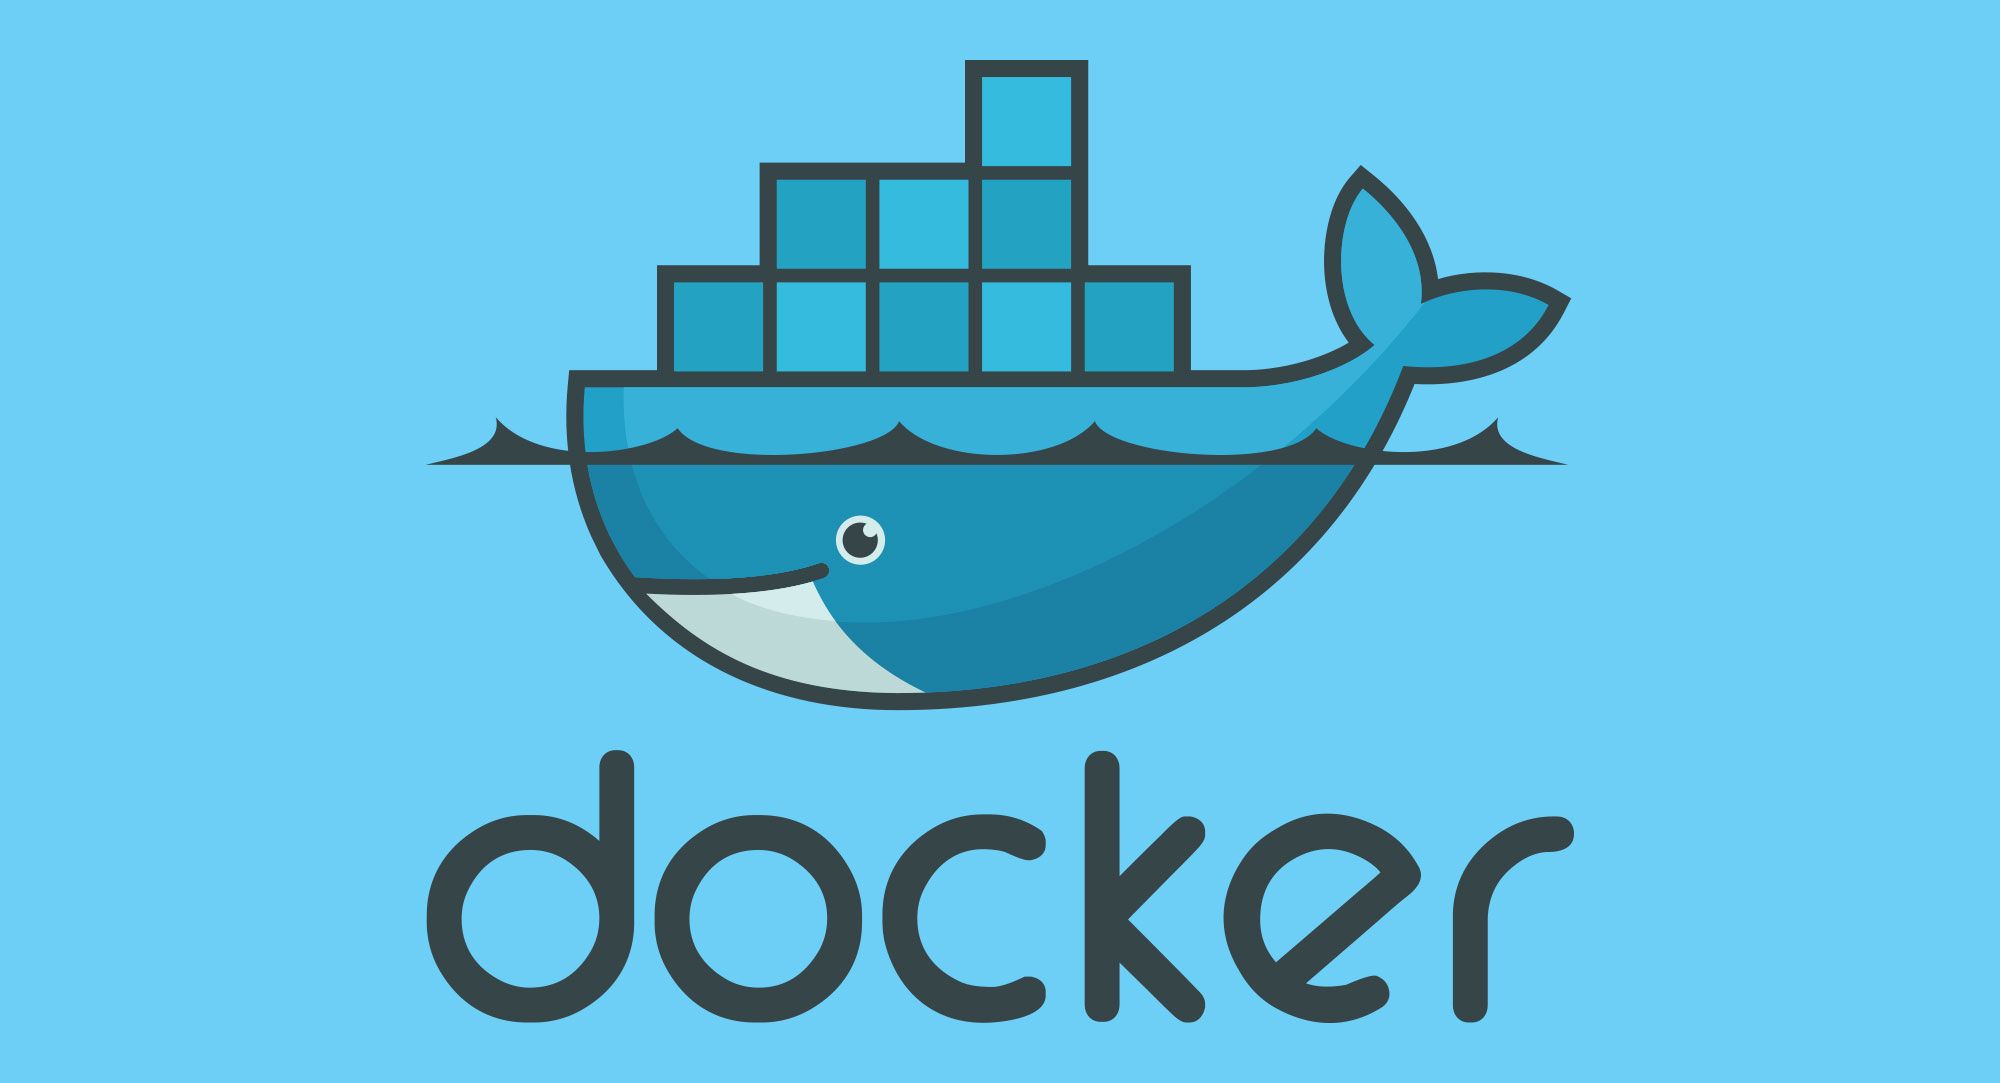 Header: Docker